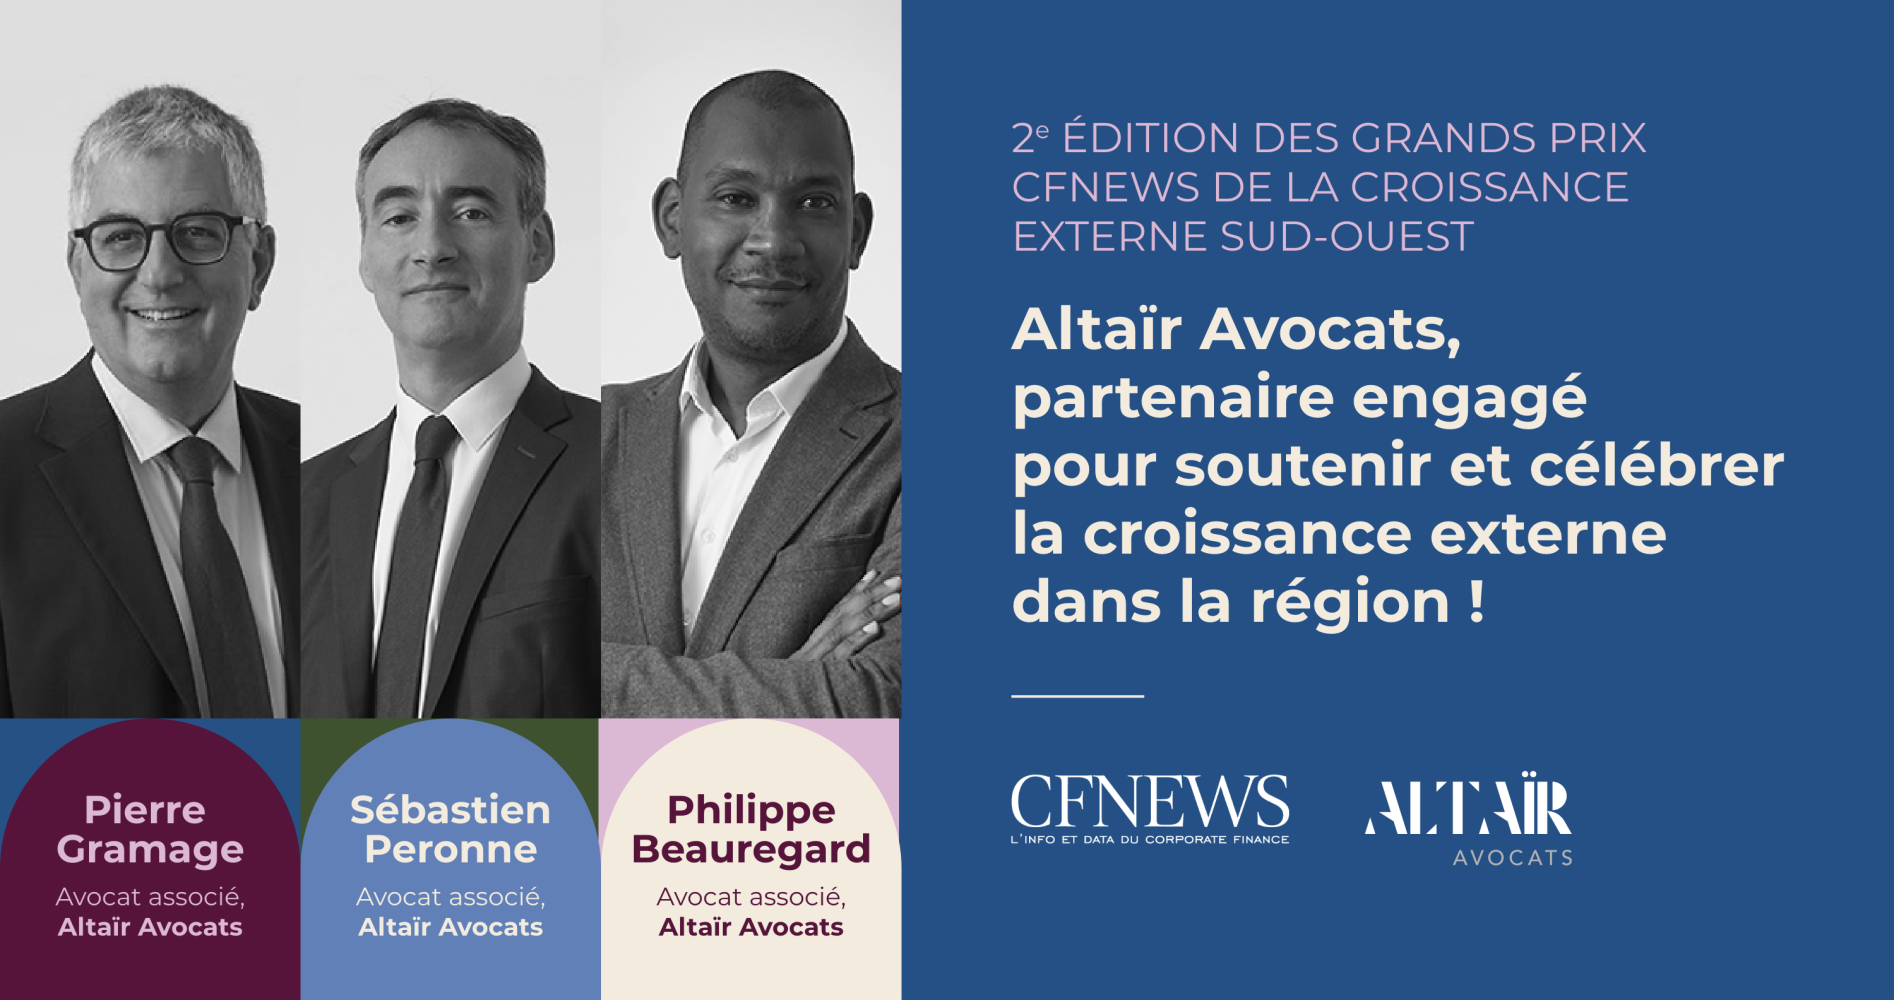 Altaïr Avocats, partenaire engagé pour soutenir la croissance externe dans la région Sud-Ouest